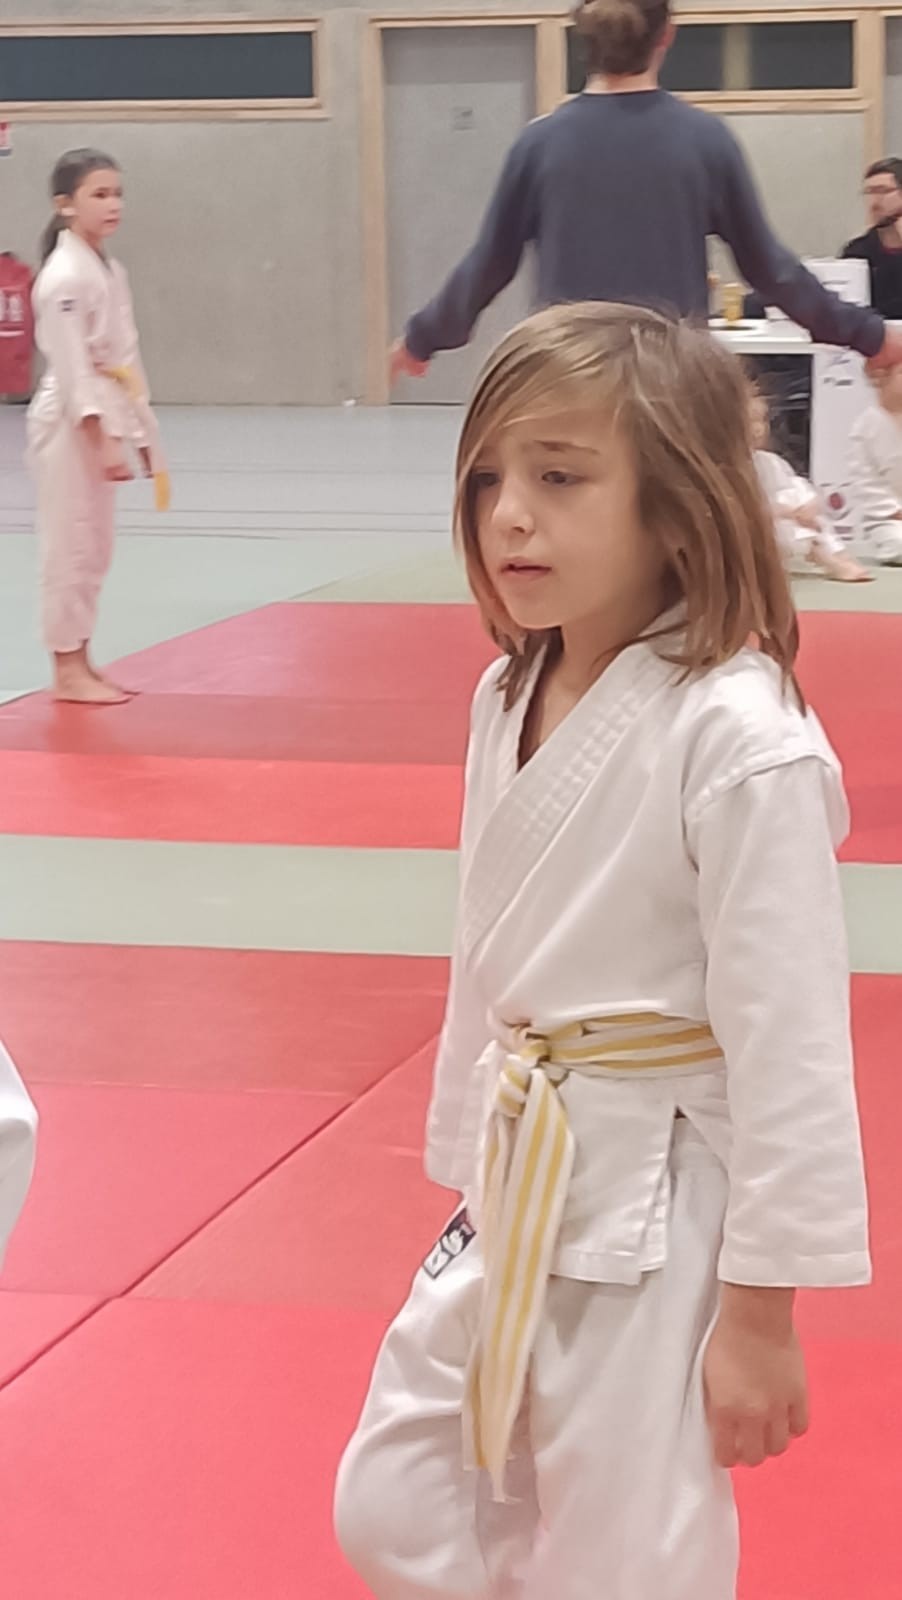 Animation judo Alby sur Chéran